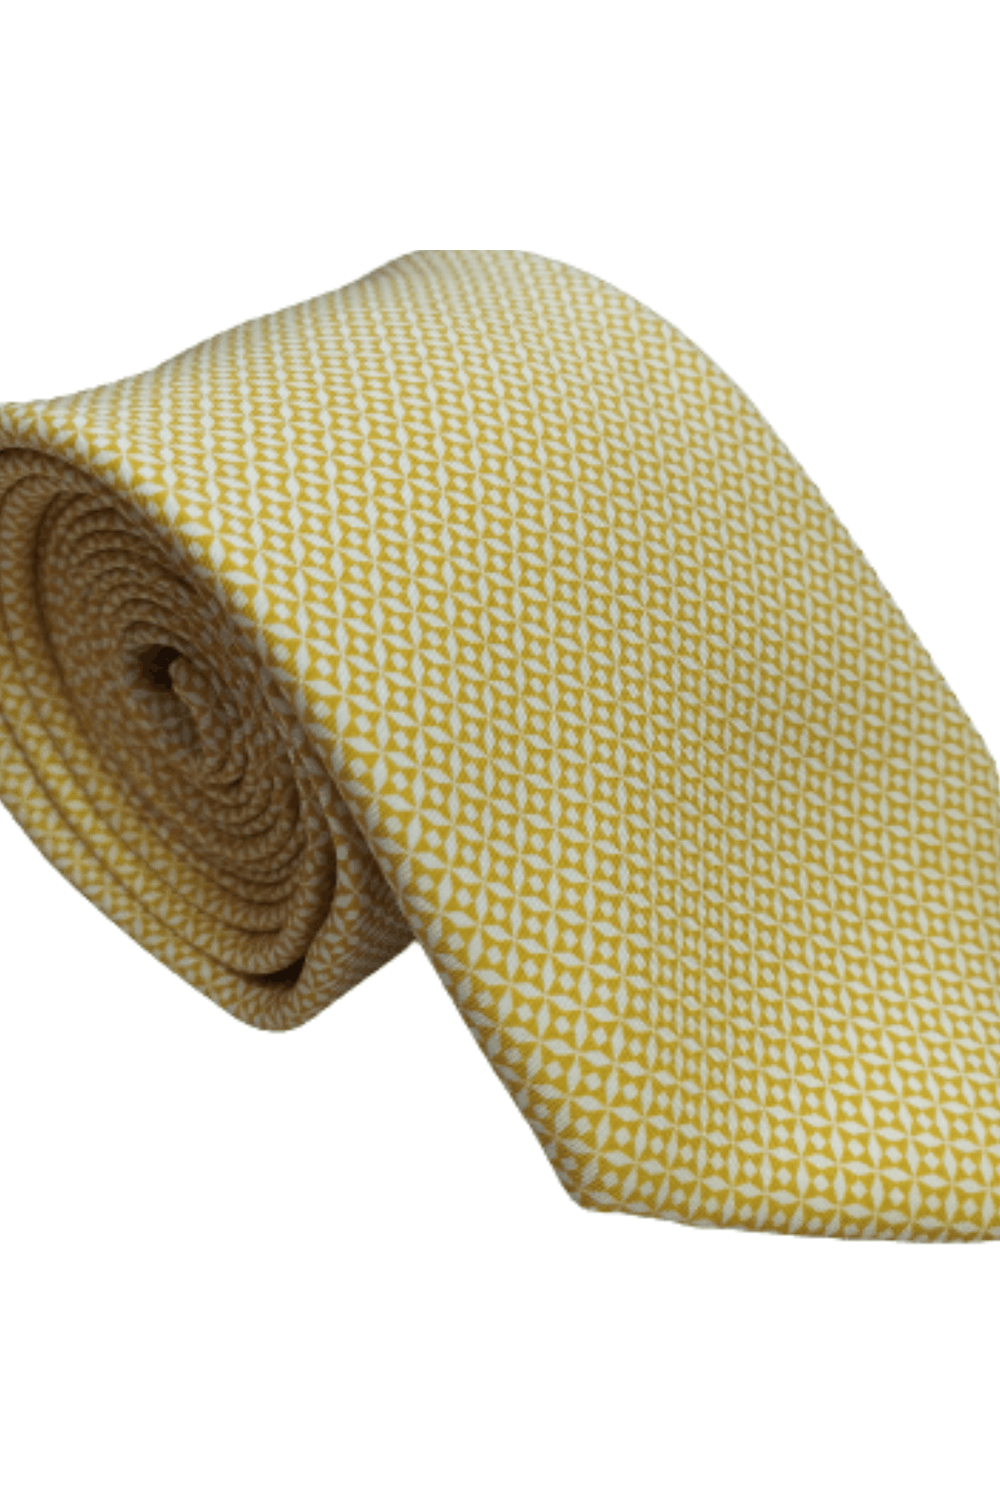 Gravata-Tradicional-Seda-Amarela-com-Desenhos-Brancos